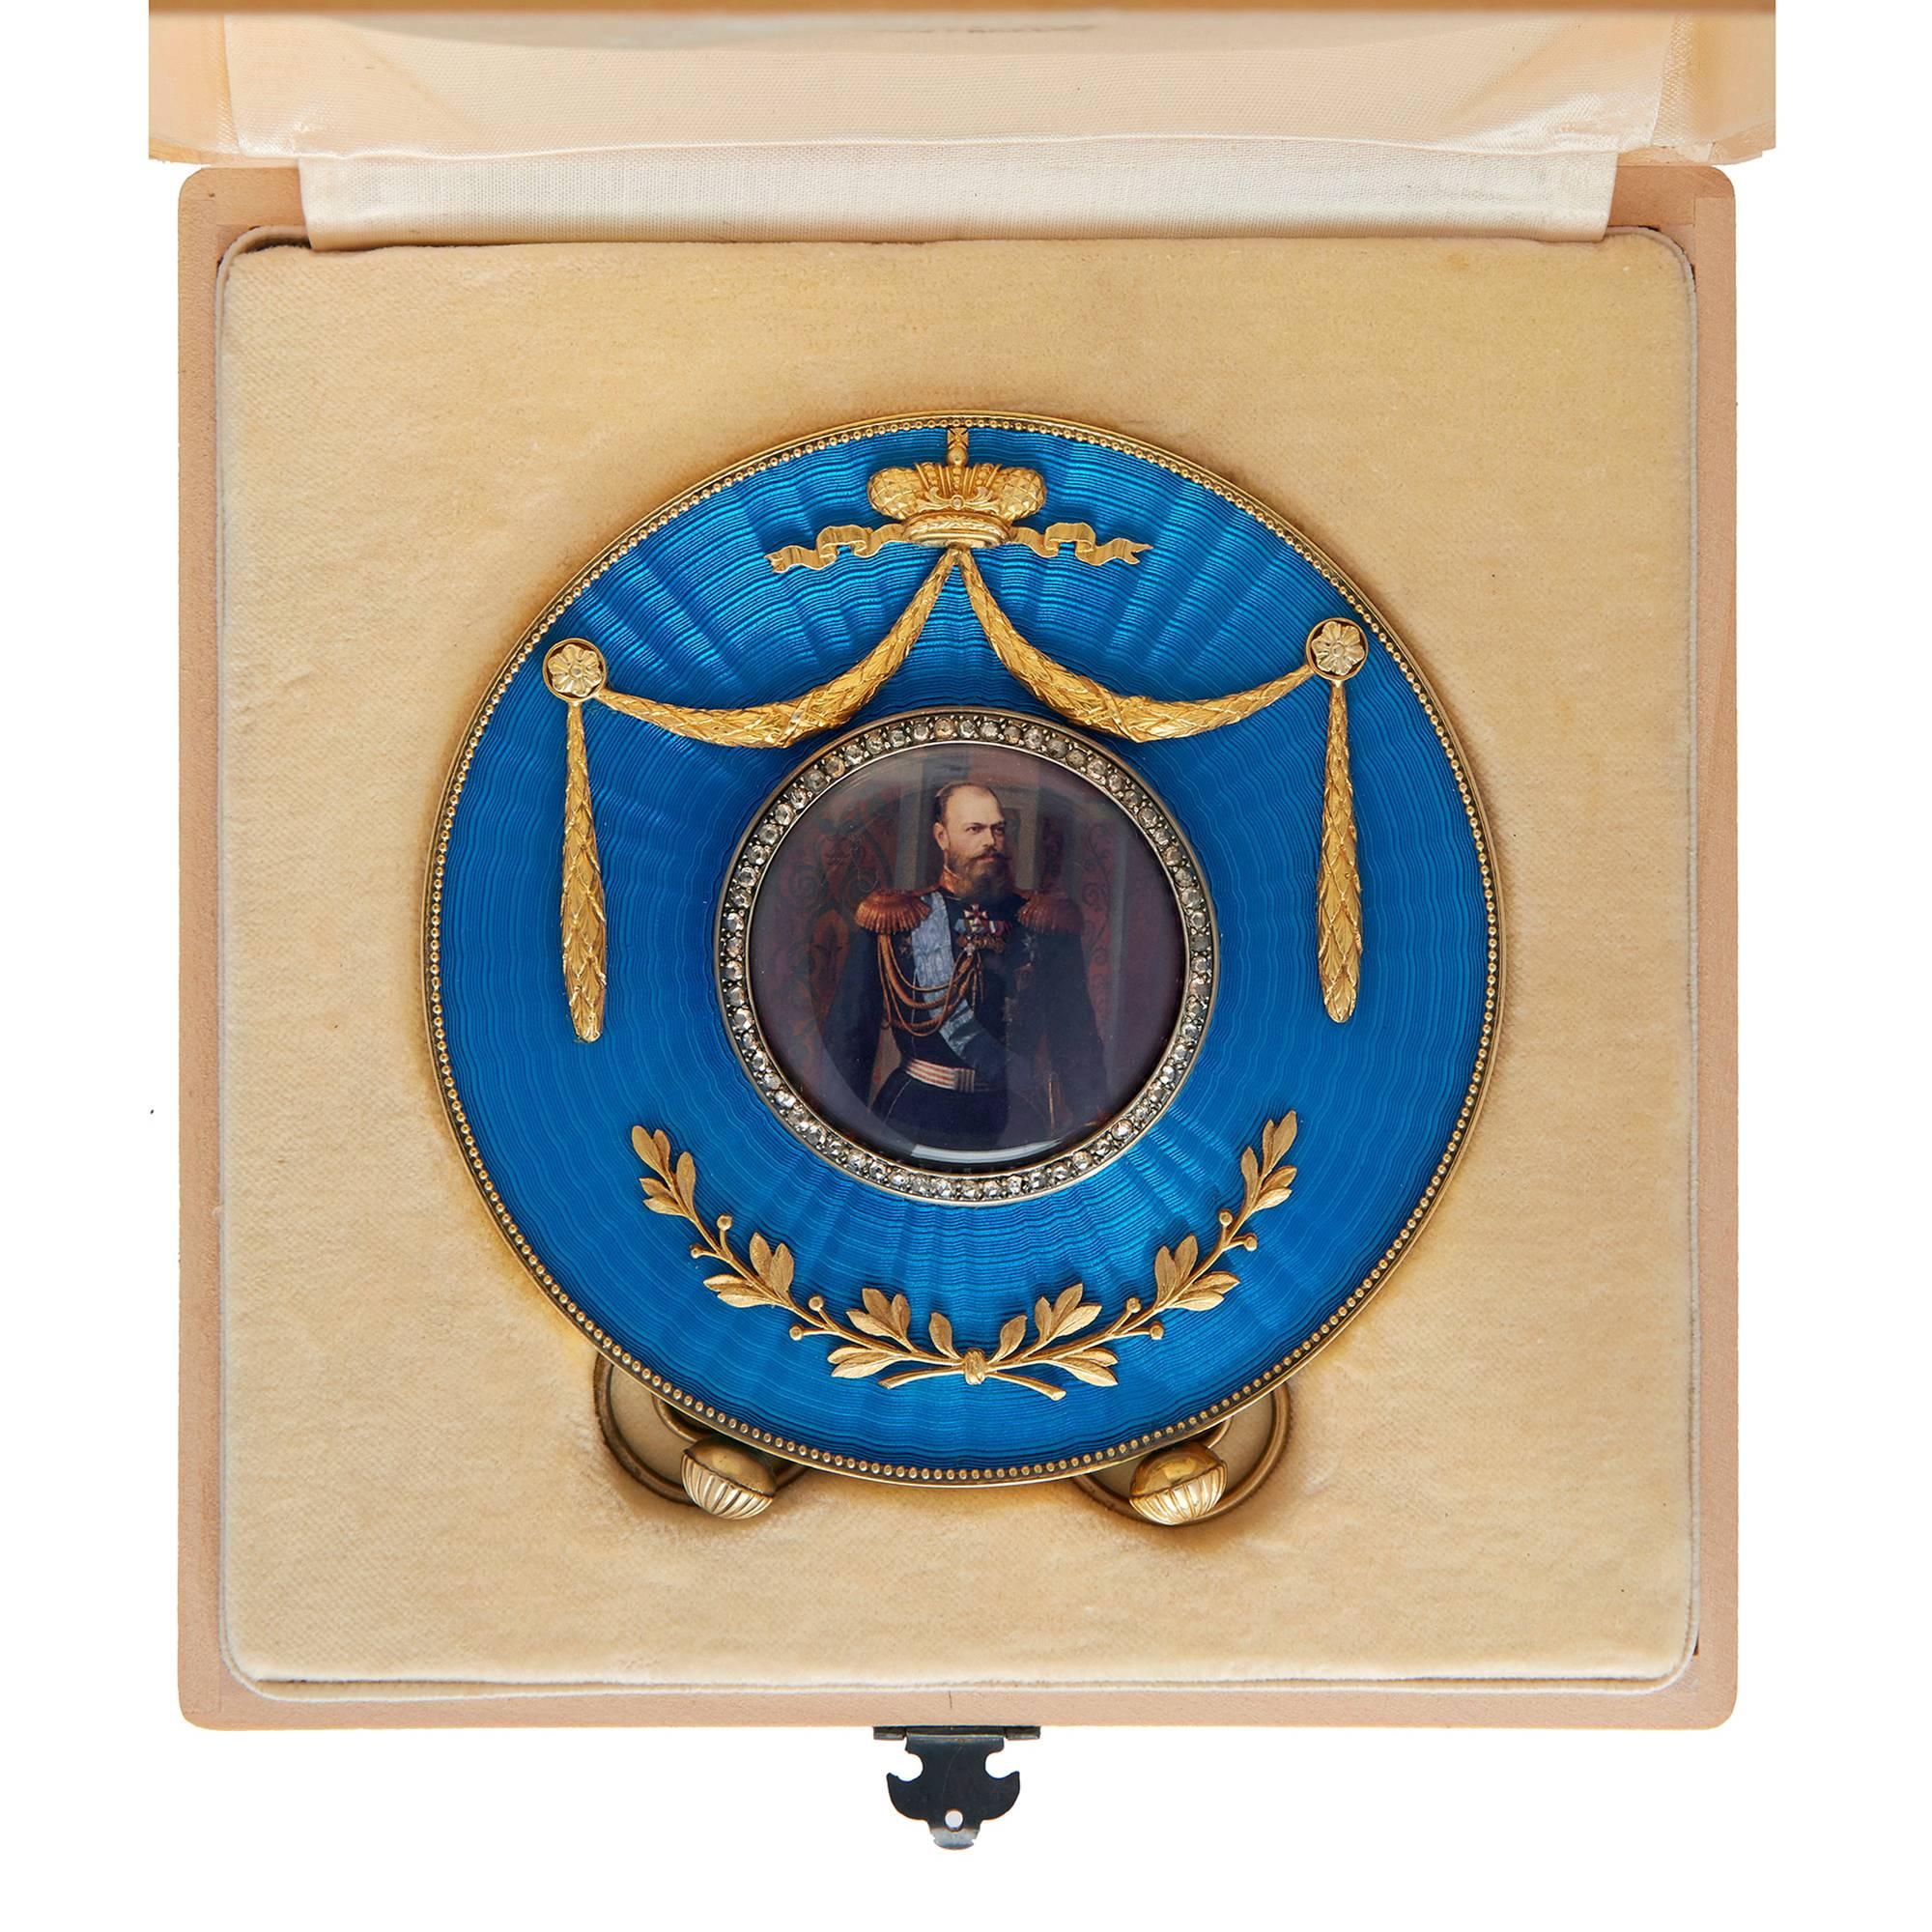 La photographie circulaire centrale est entourée d'une bande de diamants, sertie sur un panneau circulaire en émail bleu guilloché surmonté d'une couronne et d'un décor floral dans une bordure en vermeil et un dos de chevalet, avec des poinçons